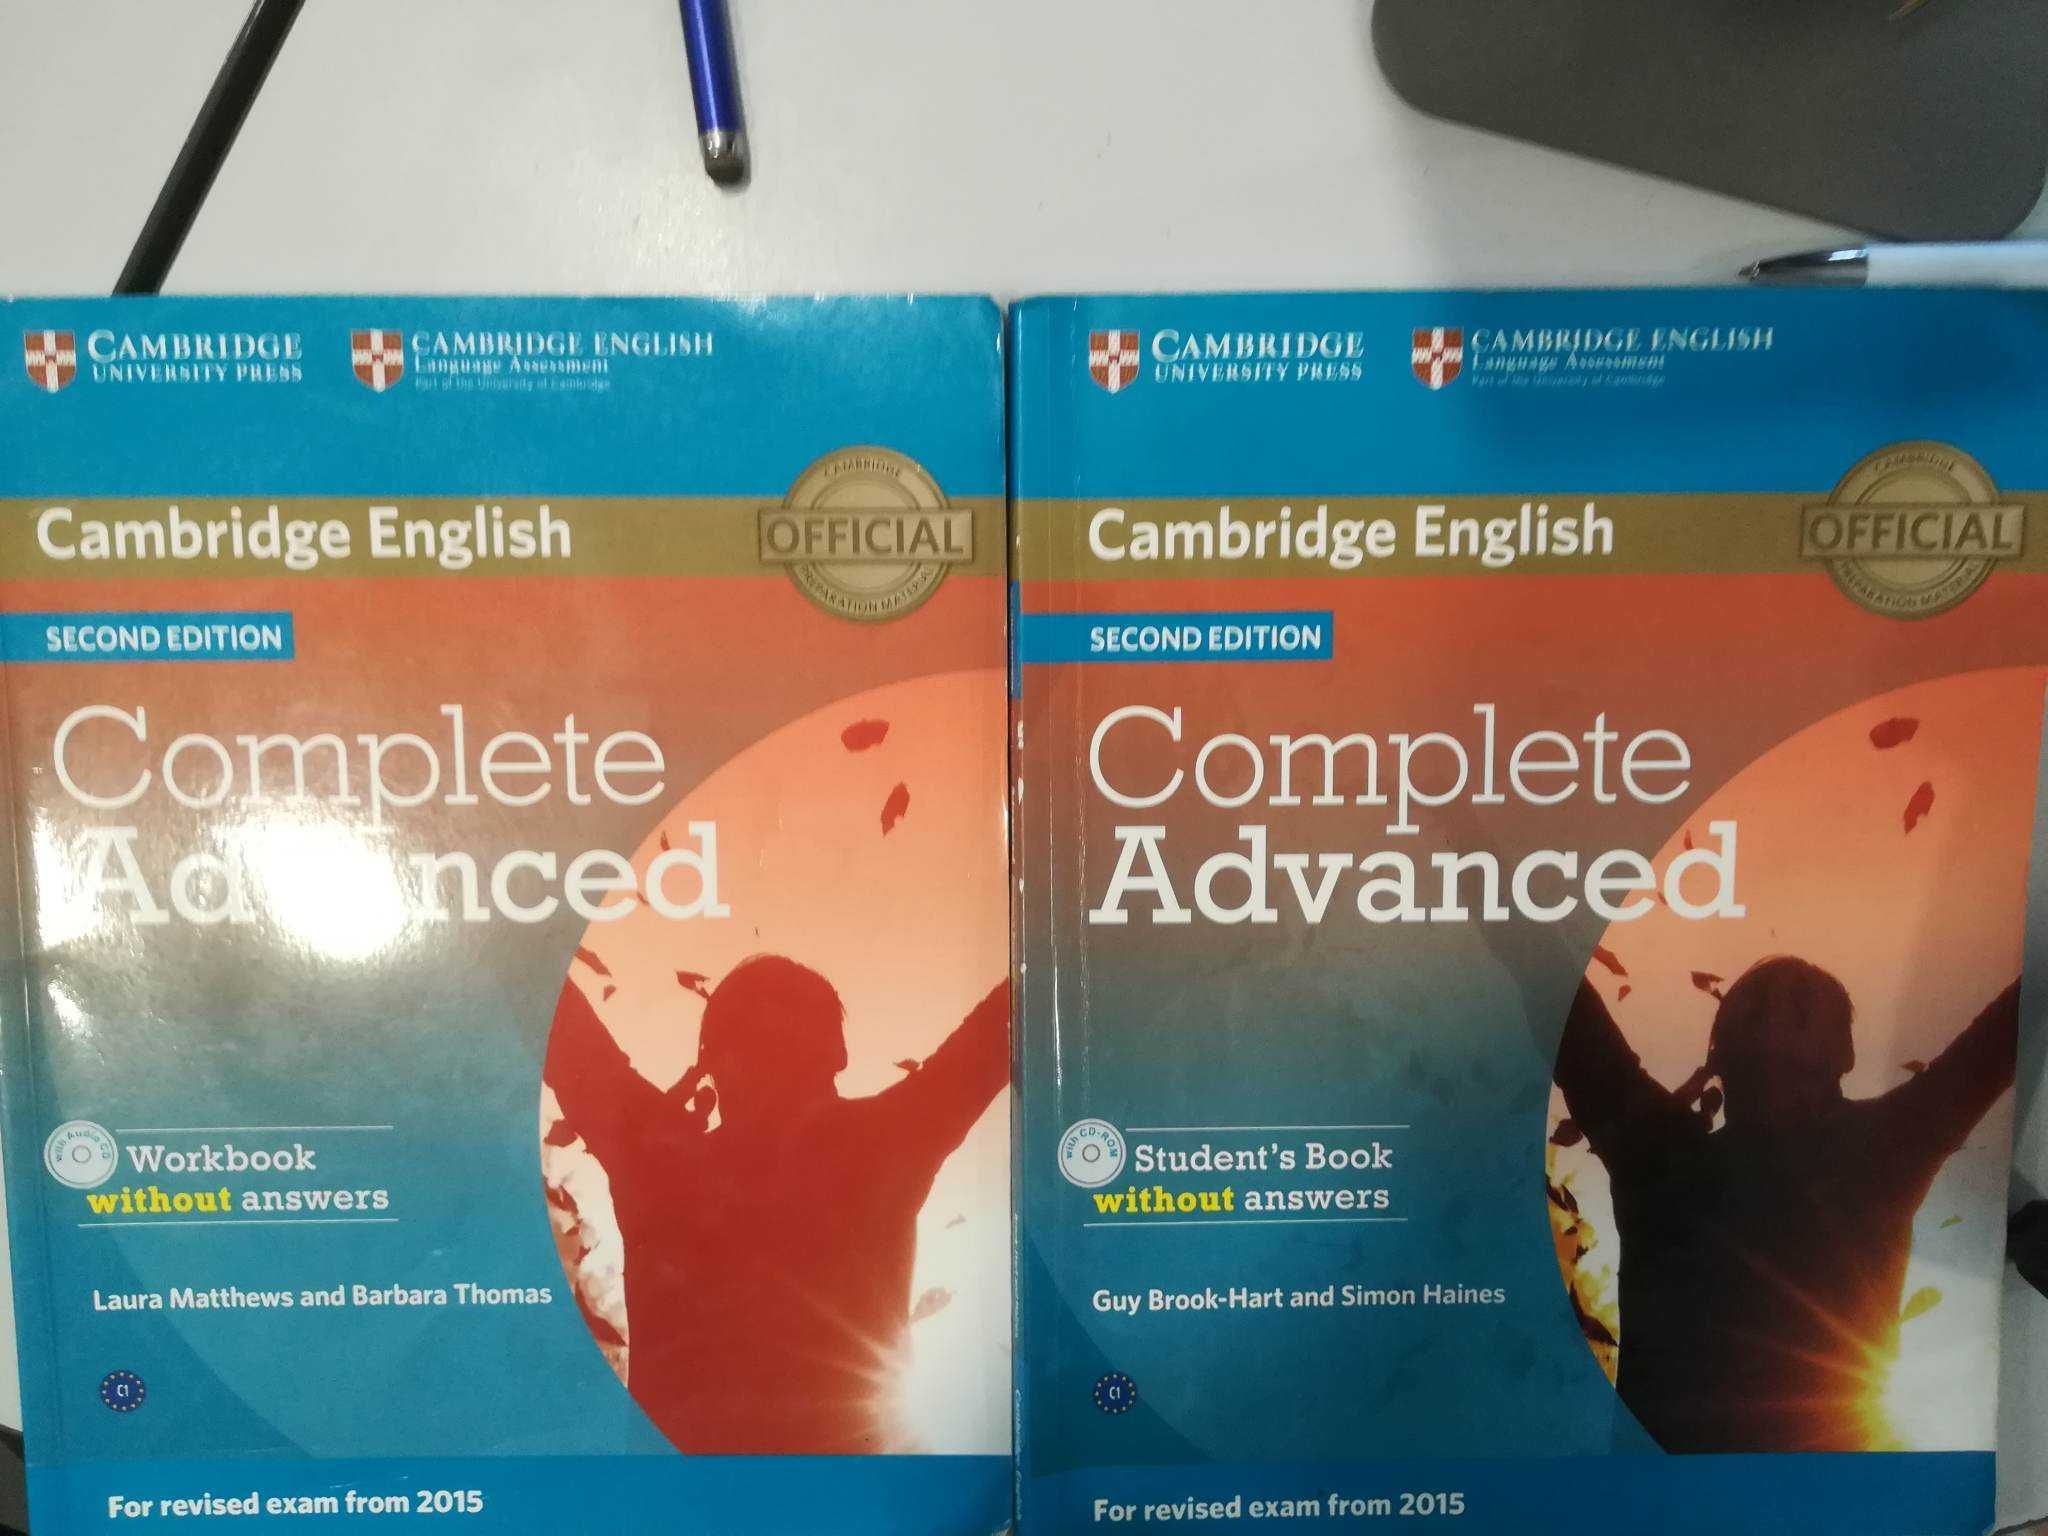 Учебная литература от издательства Cambridge University Press для изучения иностранных языков